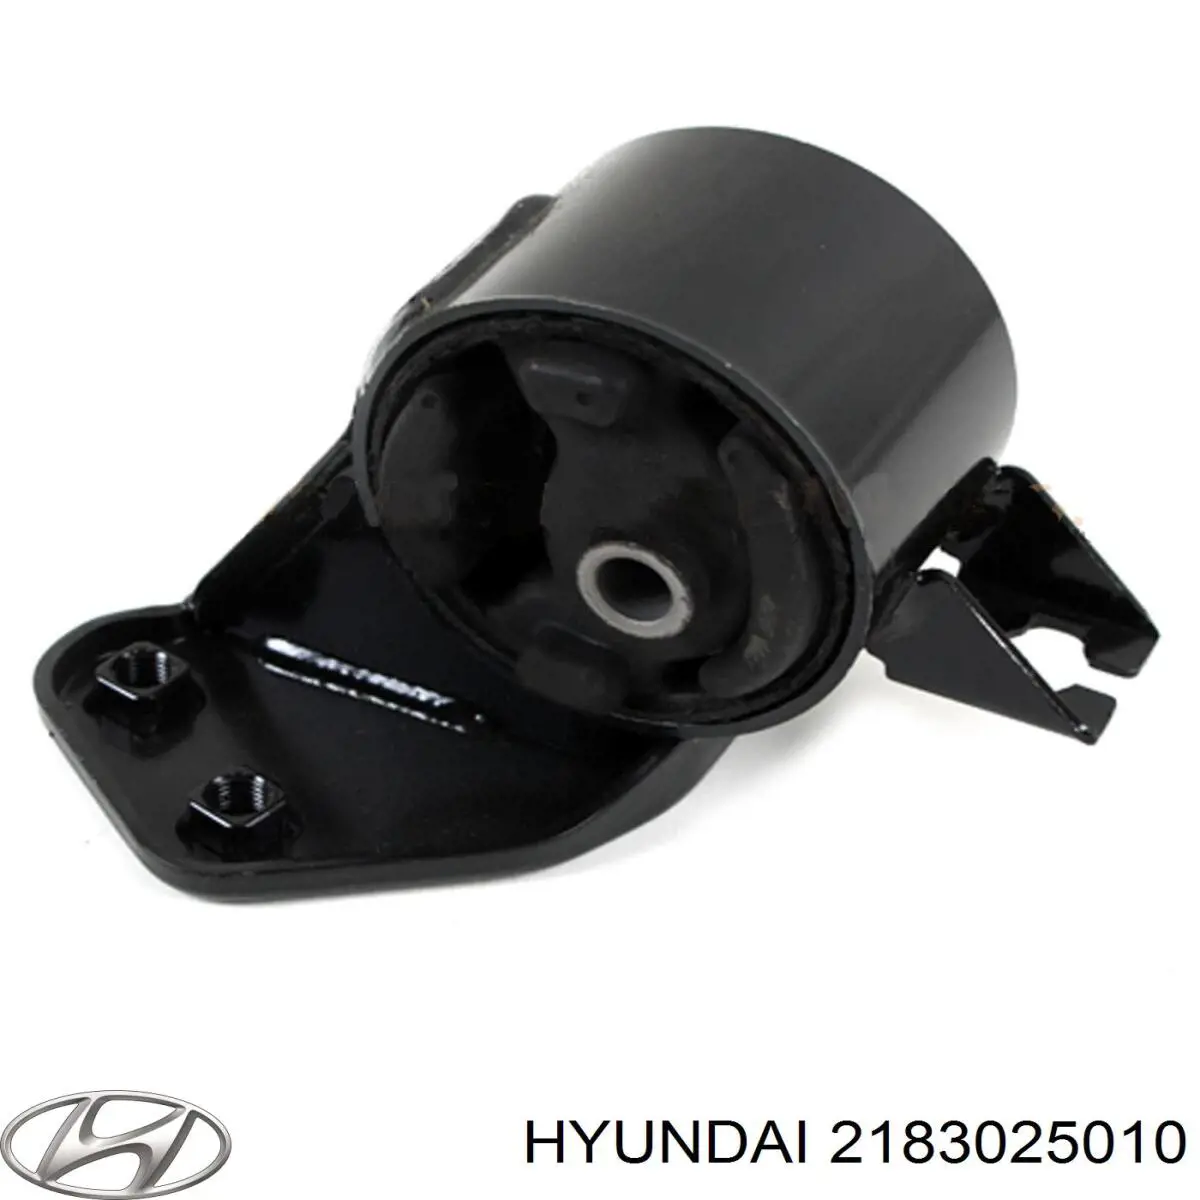 Taco motor izquierdo Hyundai Accent 